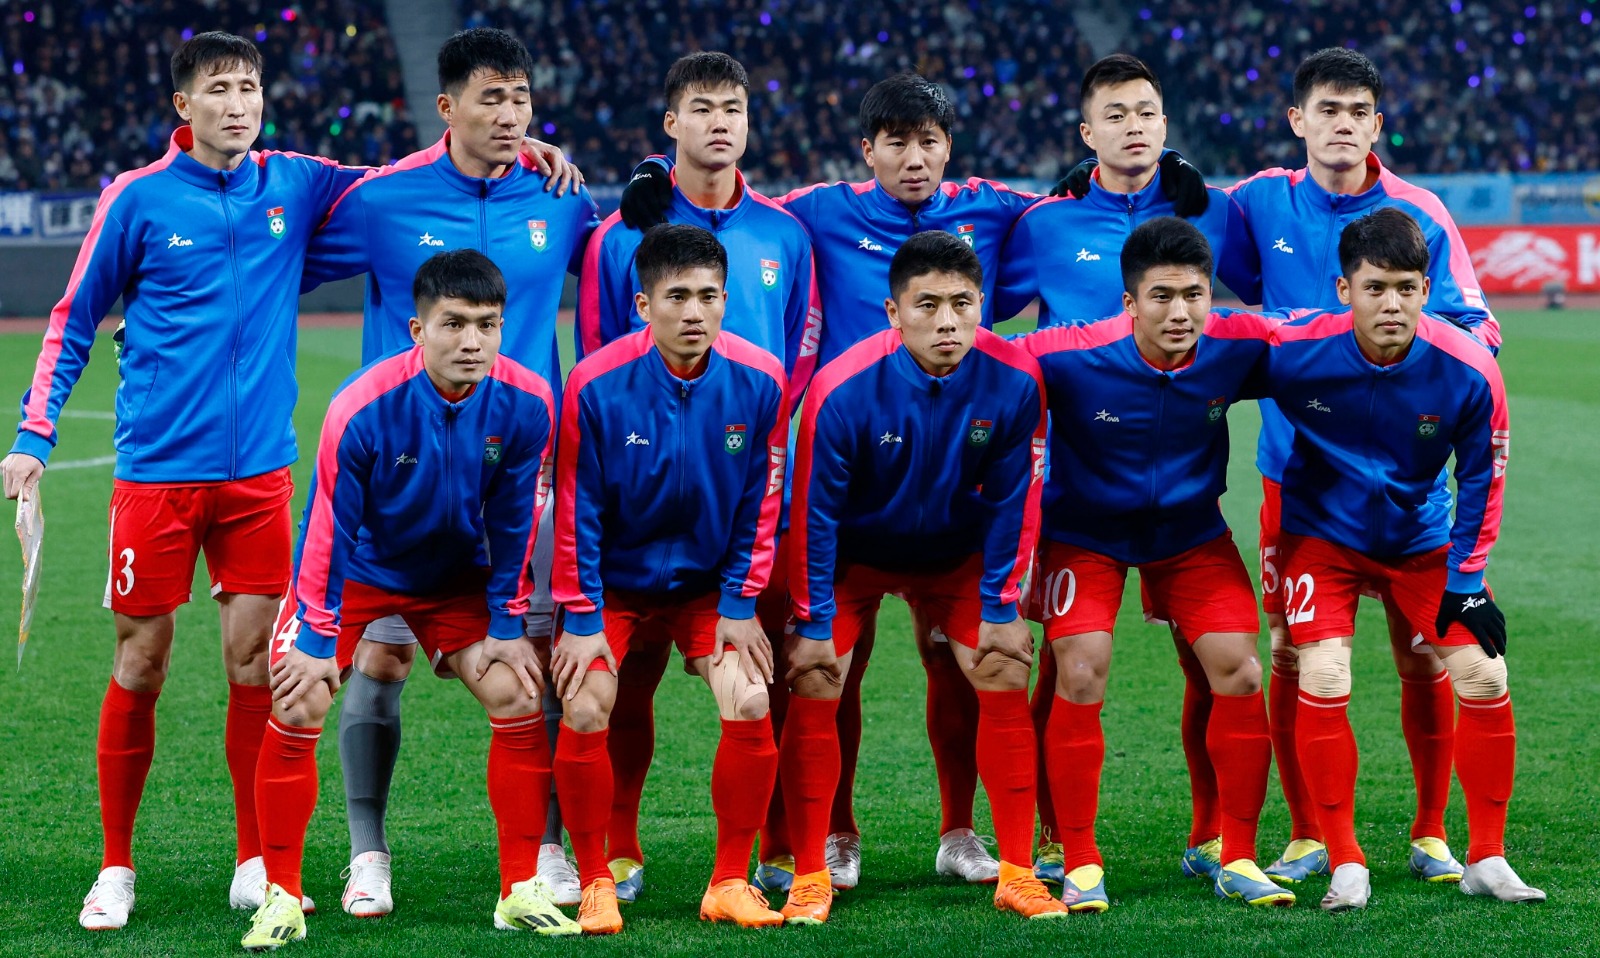 منتخب كوريا الشمالية لكرة القدم في تصفيات كأس العالم 2026